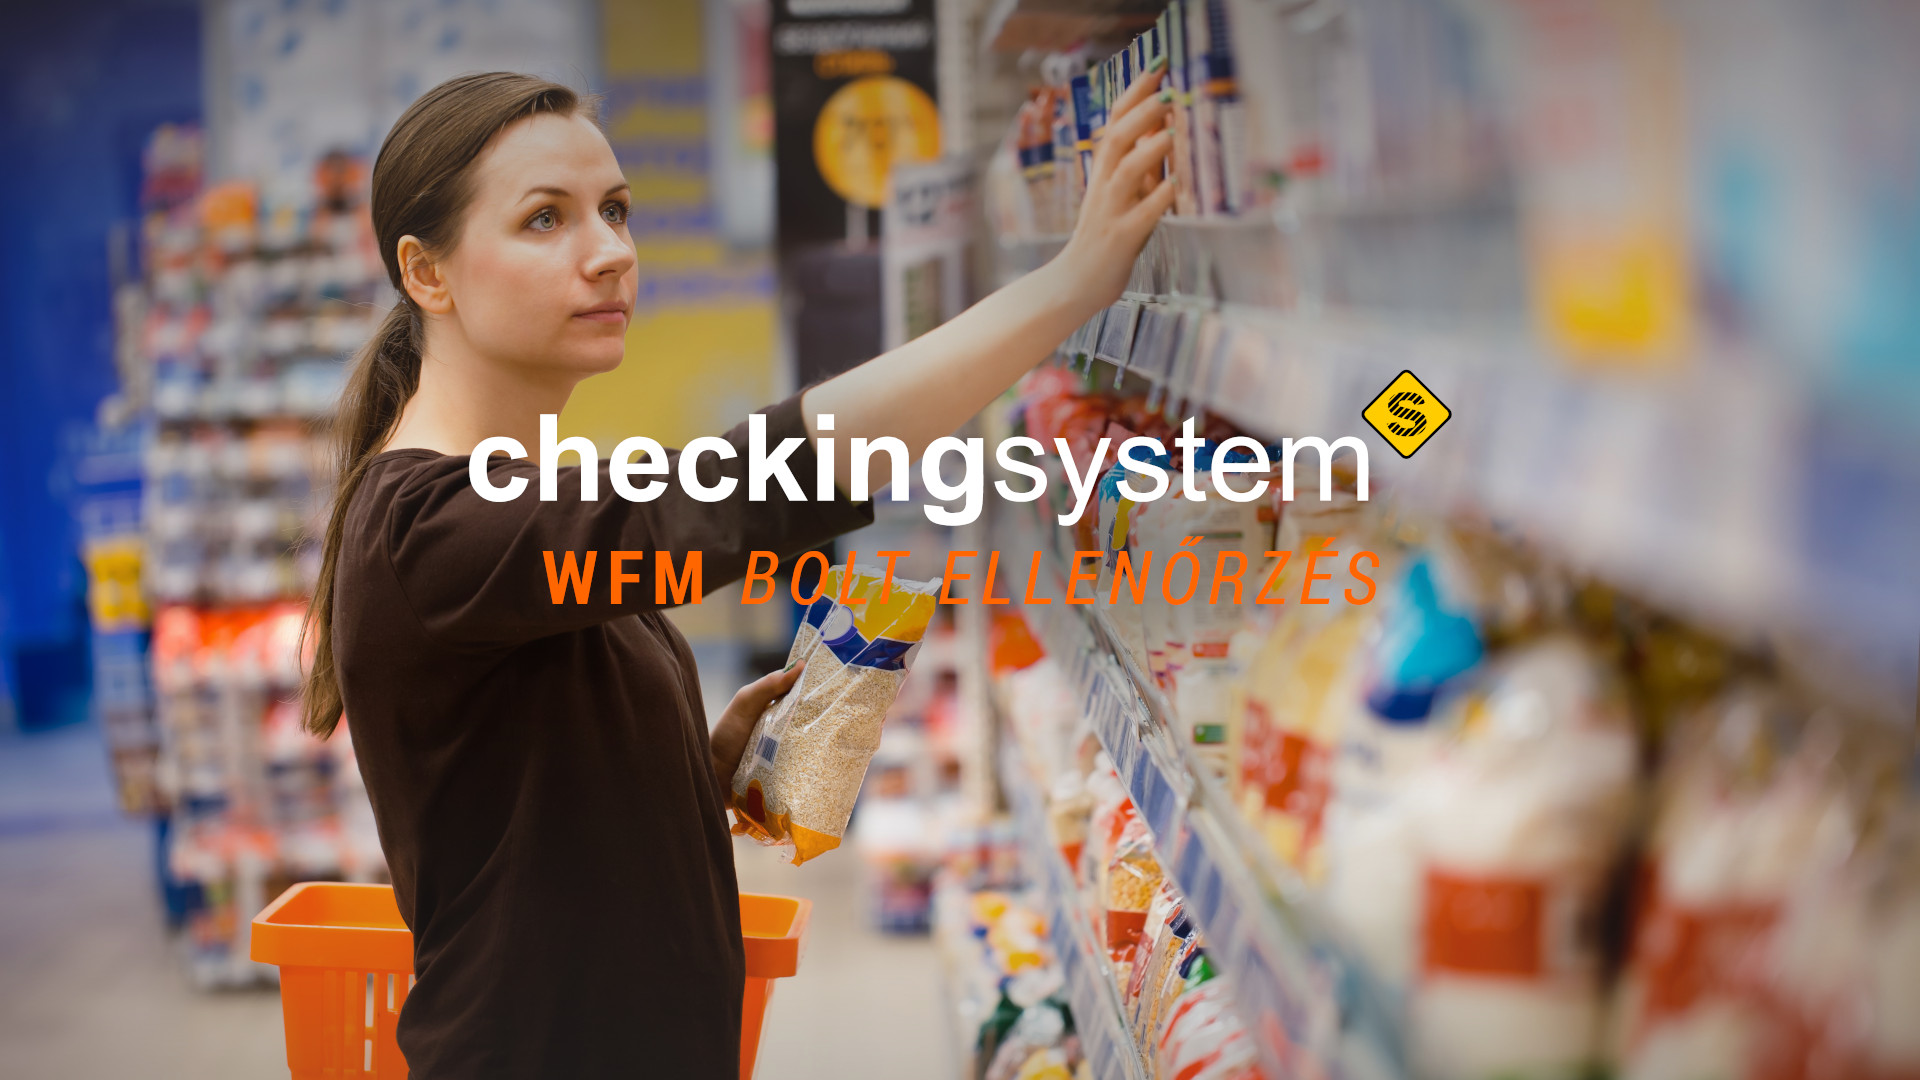 Checkingsystem WFM Bolt ellenőrzés